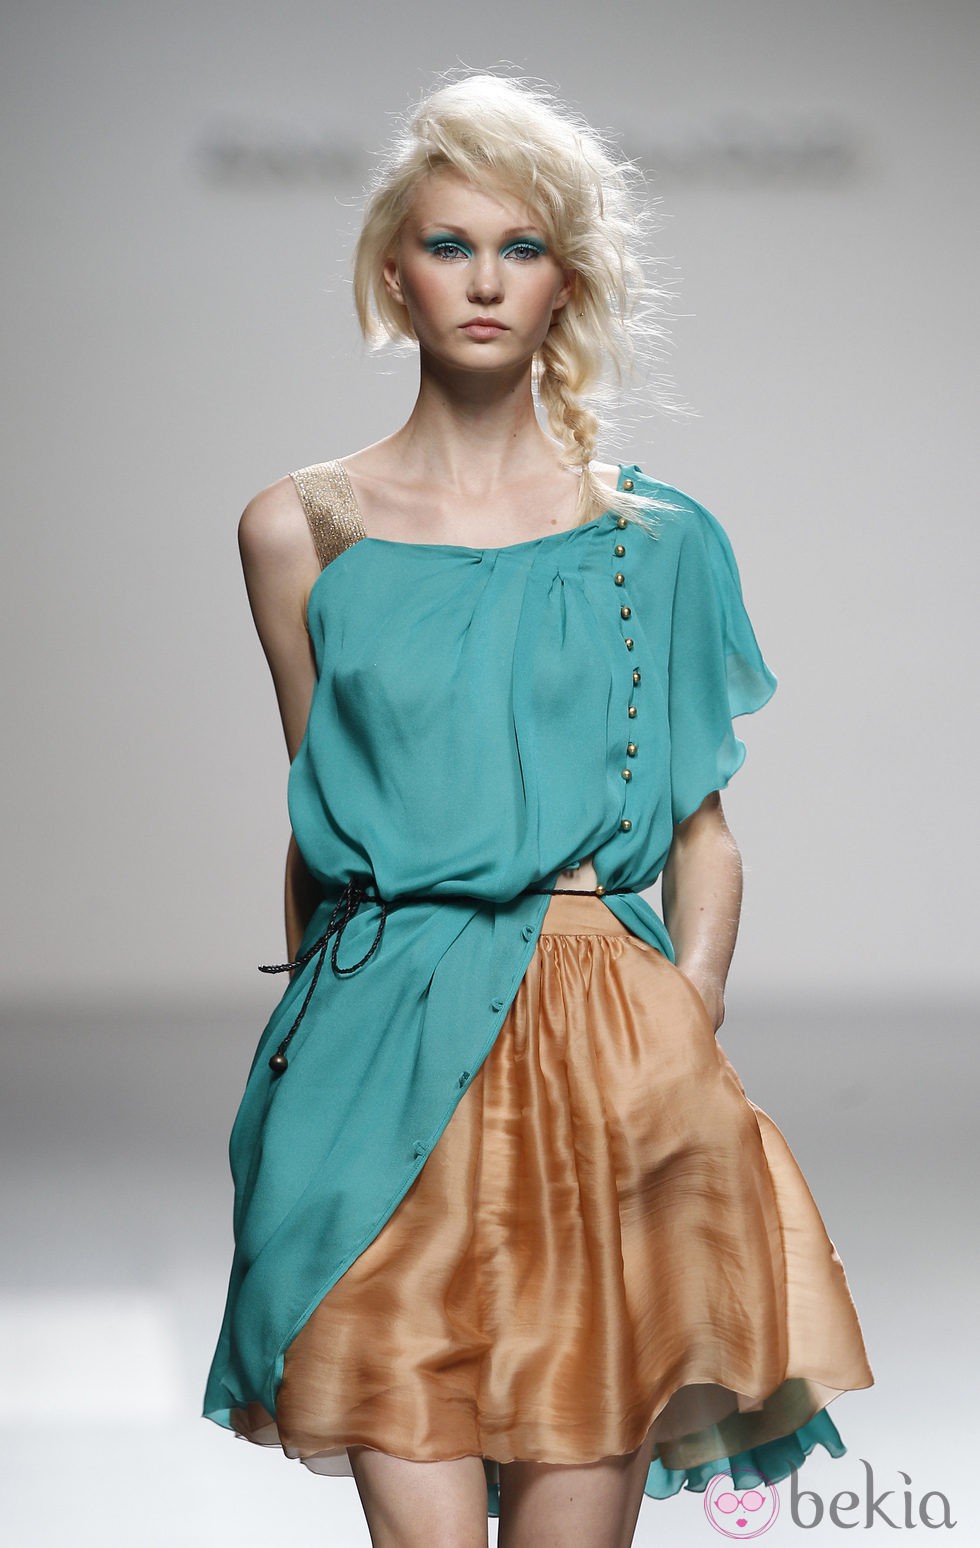 Falda corta de tono bronce de Kina Fernández en Cibeles, colección primavera de 2012